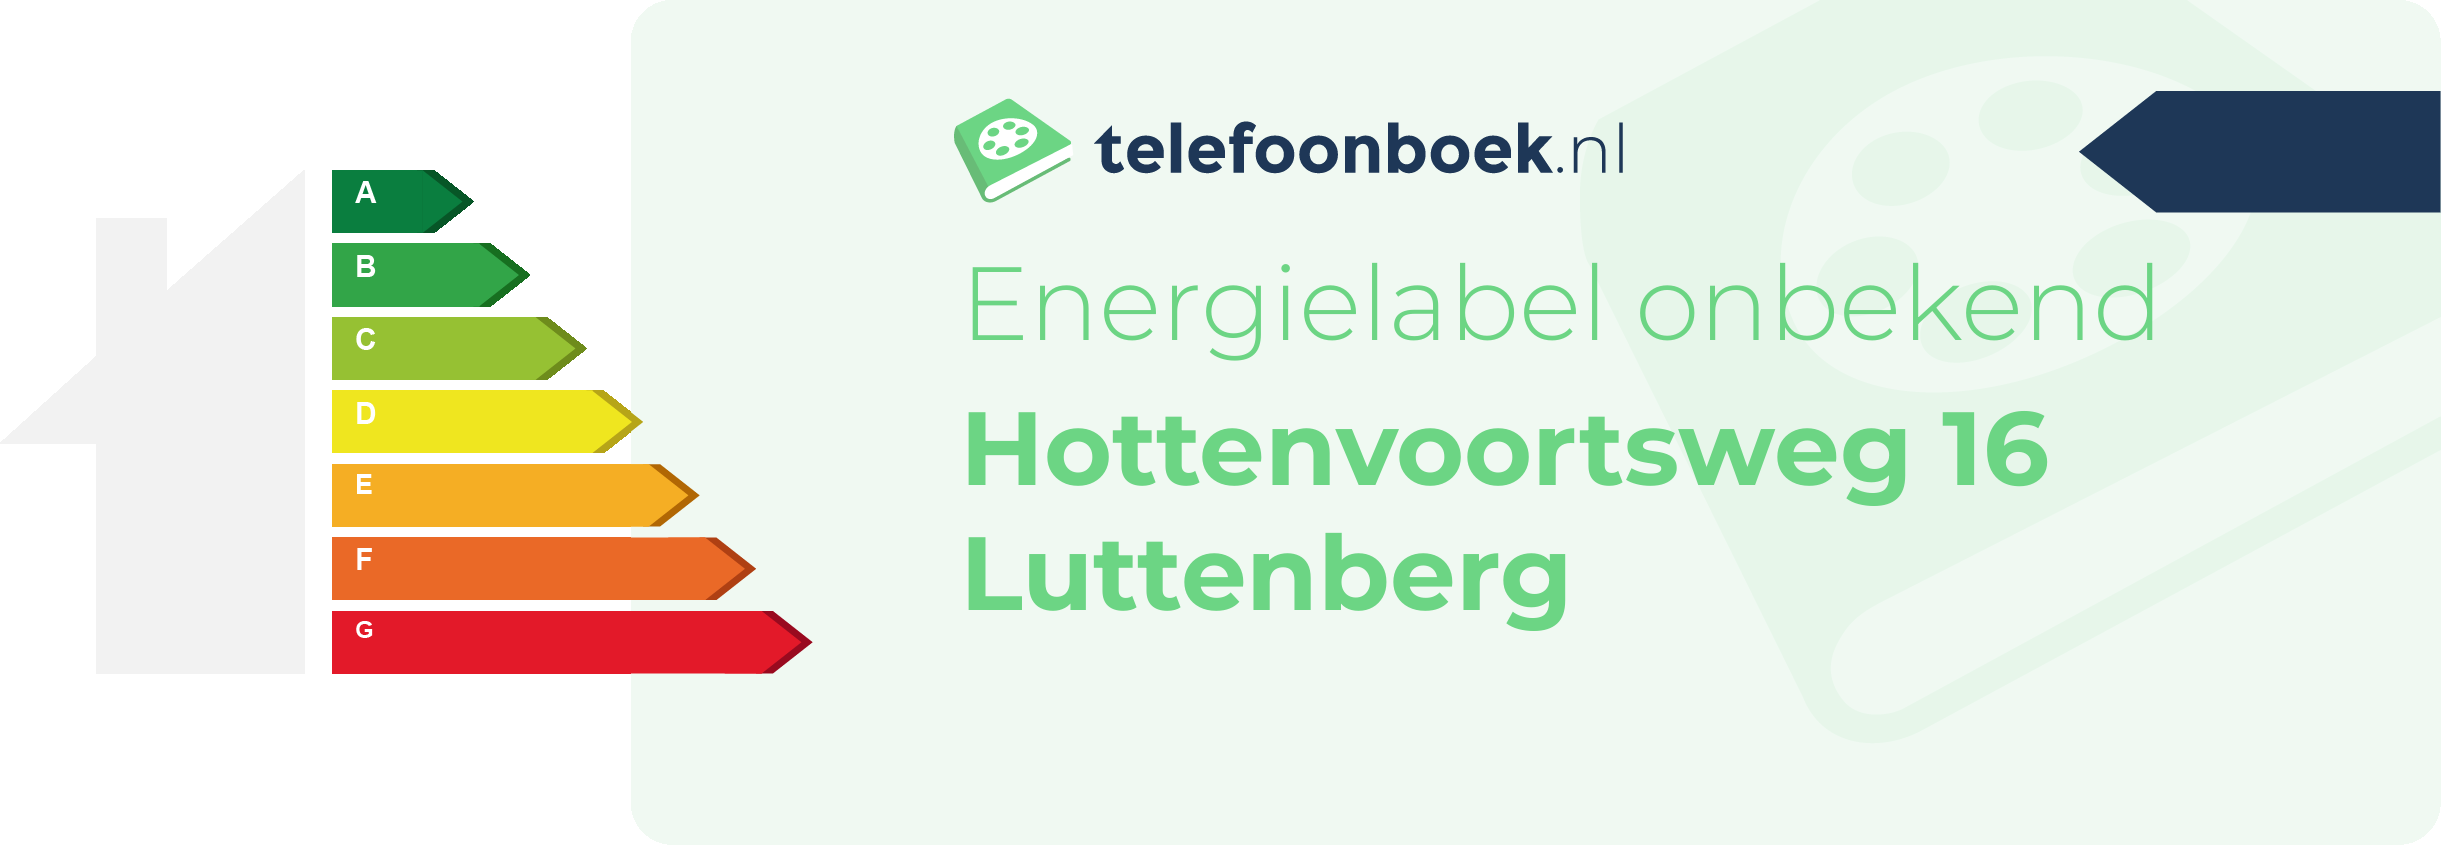 Energielabel Hottenvoortsweg 16 Luttenberg